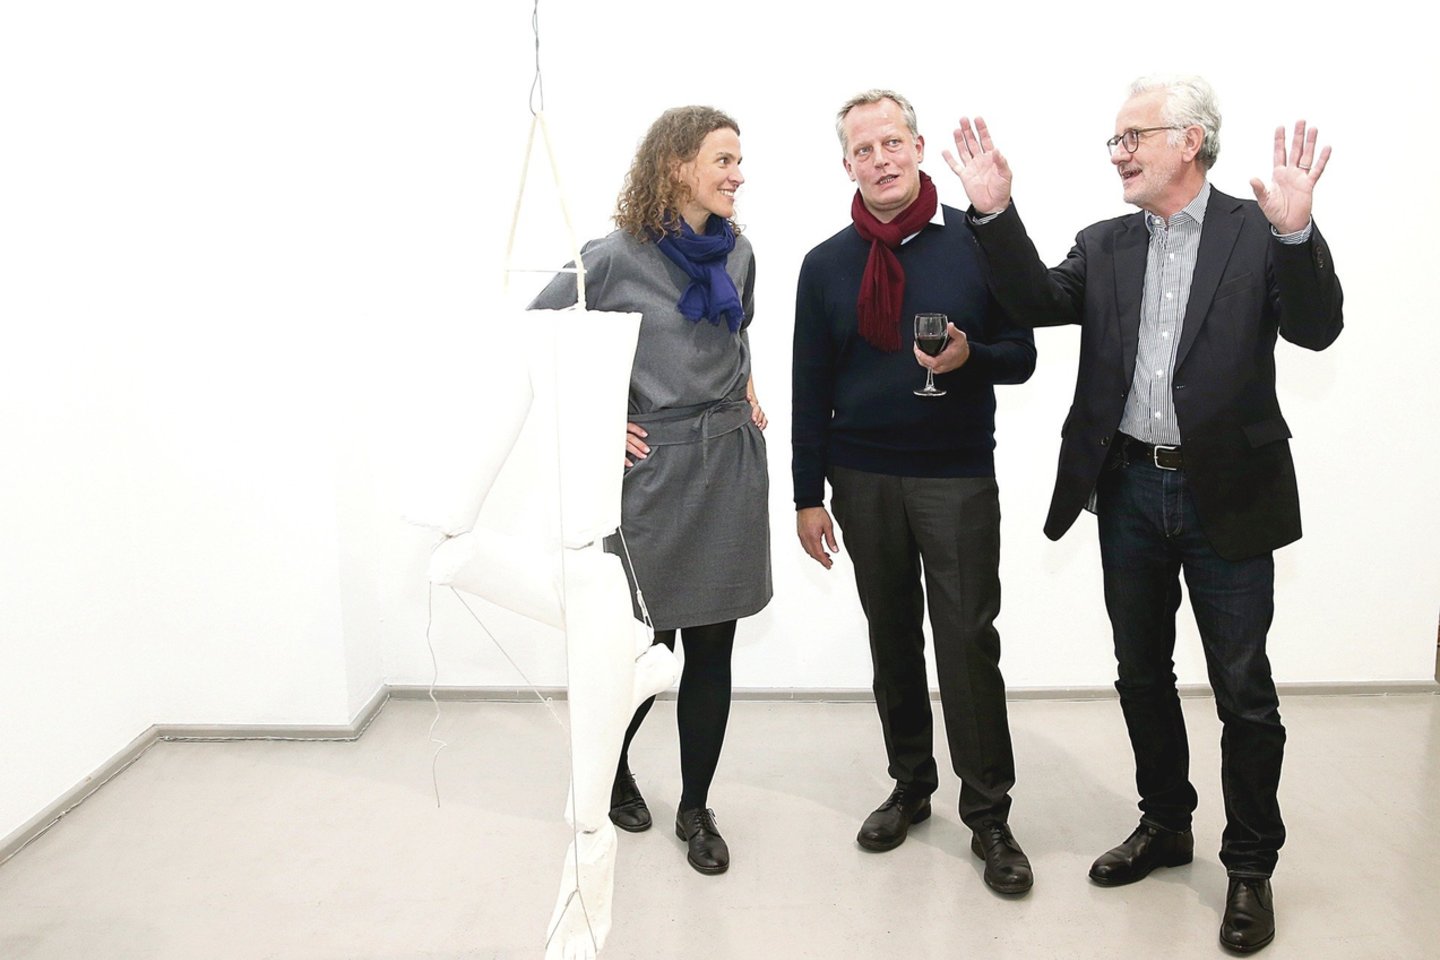 Sostinės „Vartų“ galerijai įsitvirtinti tarptautinėje meno scenoje padėjusi L.Rutkutė su kuratoriumi D.Marzona ir menotyrininku J.Heynenu (dešinėje).